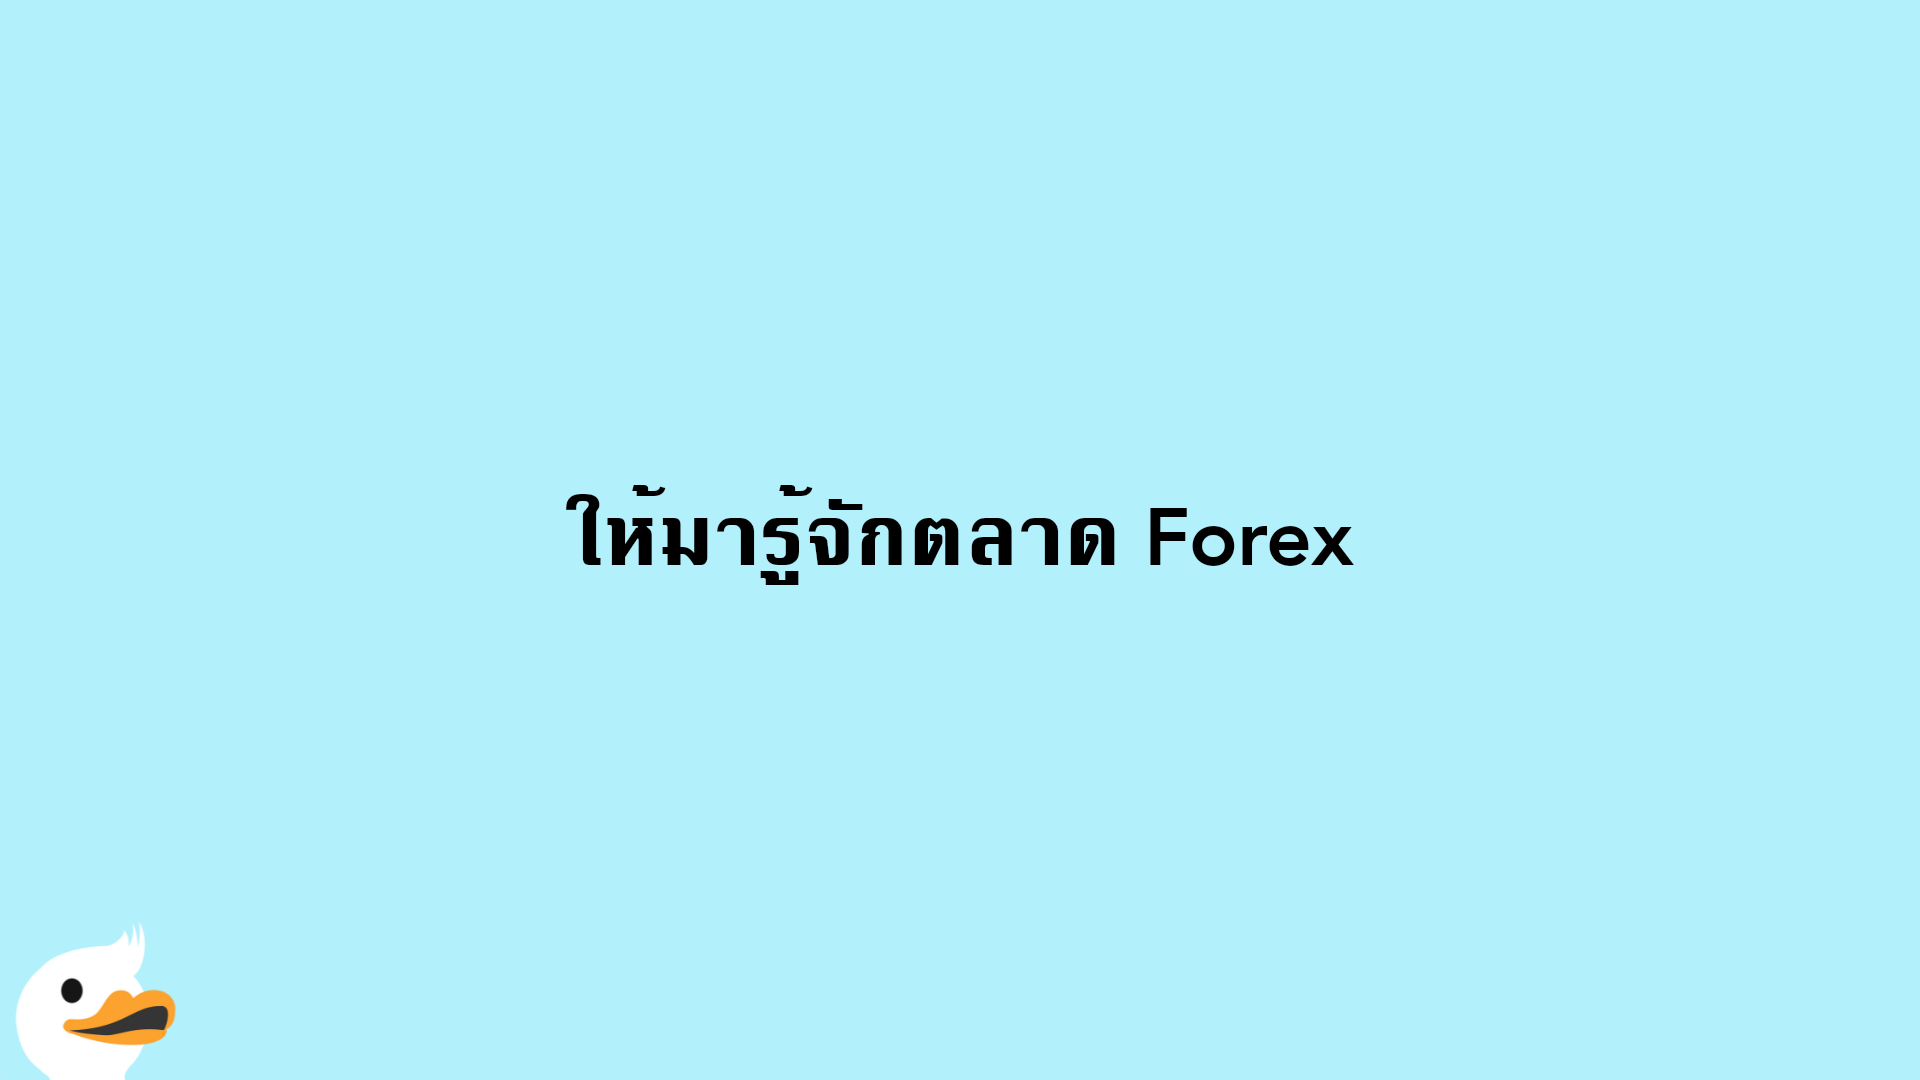 ให้มารู้จักตลาด Forex